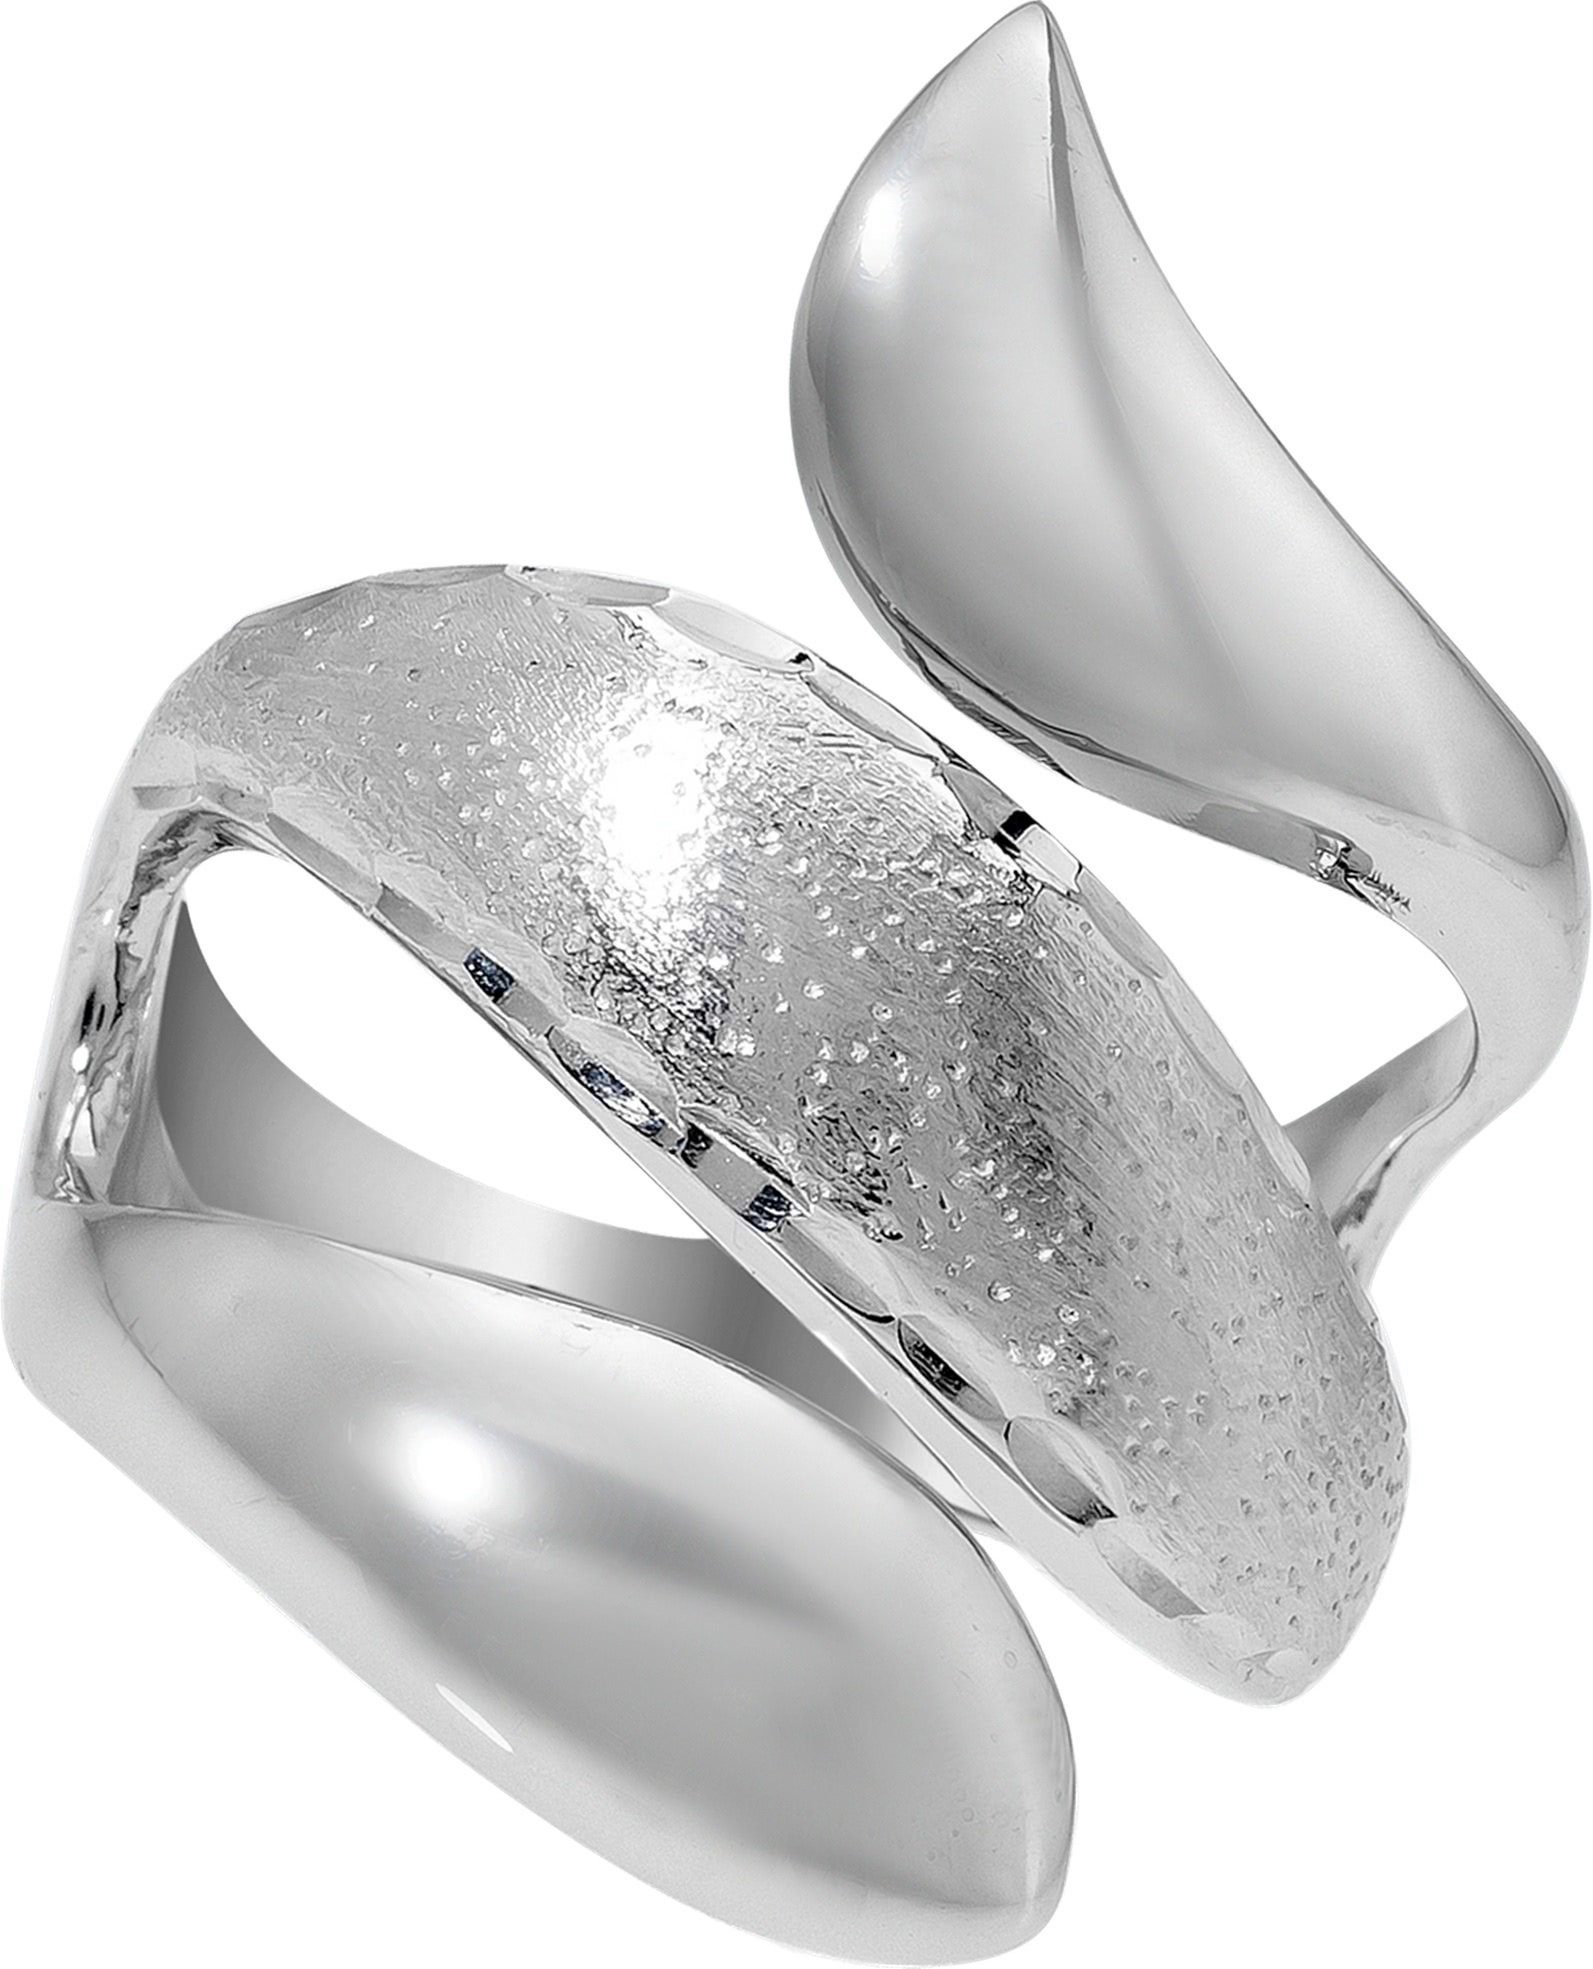 Silberring Schlange, Damen 925 Sterling (16,6), 52 Balia Silber (Fingerring), für Ring Balia Ring diamantiert Damen